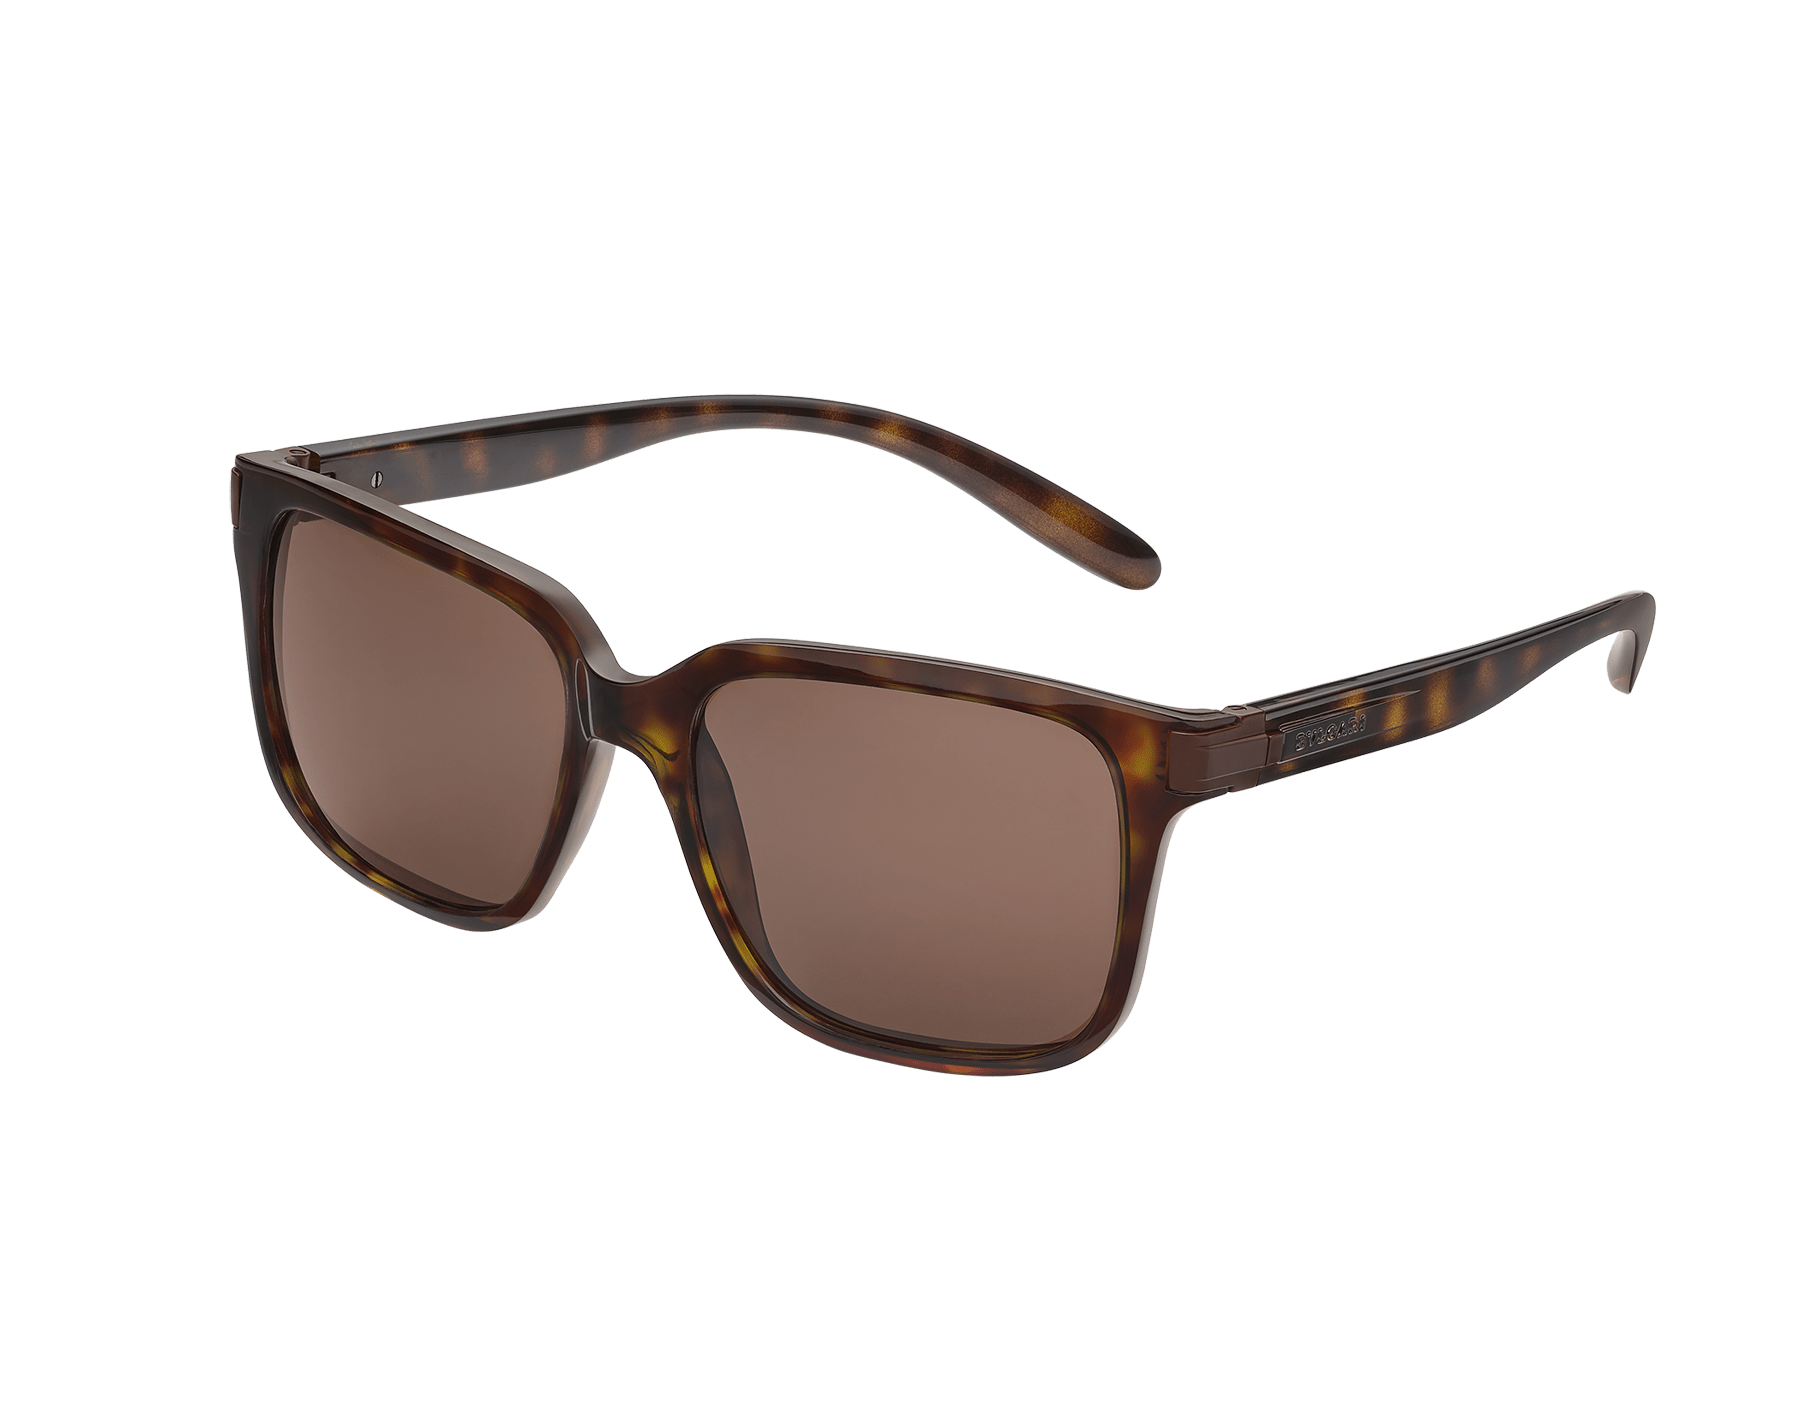 "Bvlgari Bvlgari Aluminium" squared acetate sunglasses 904139 image 1